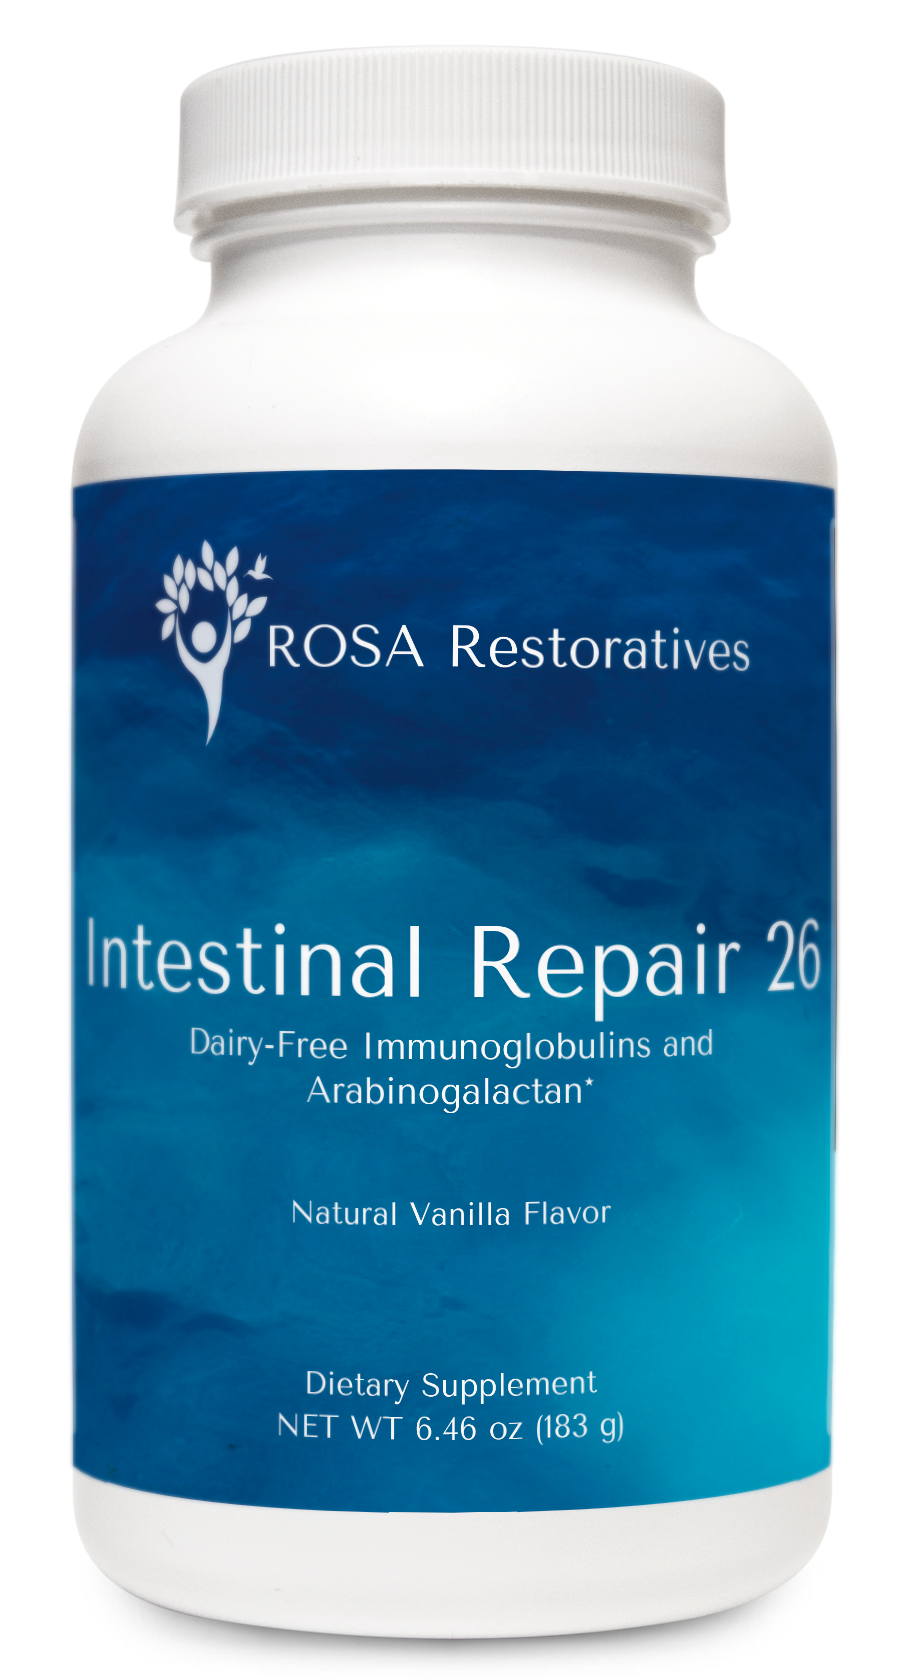 Intestinal Repair 26